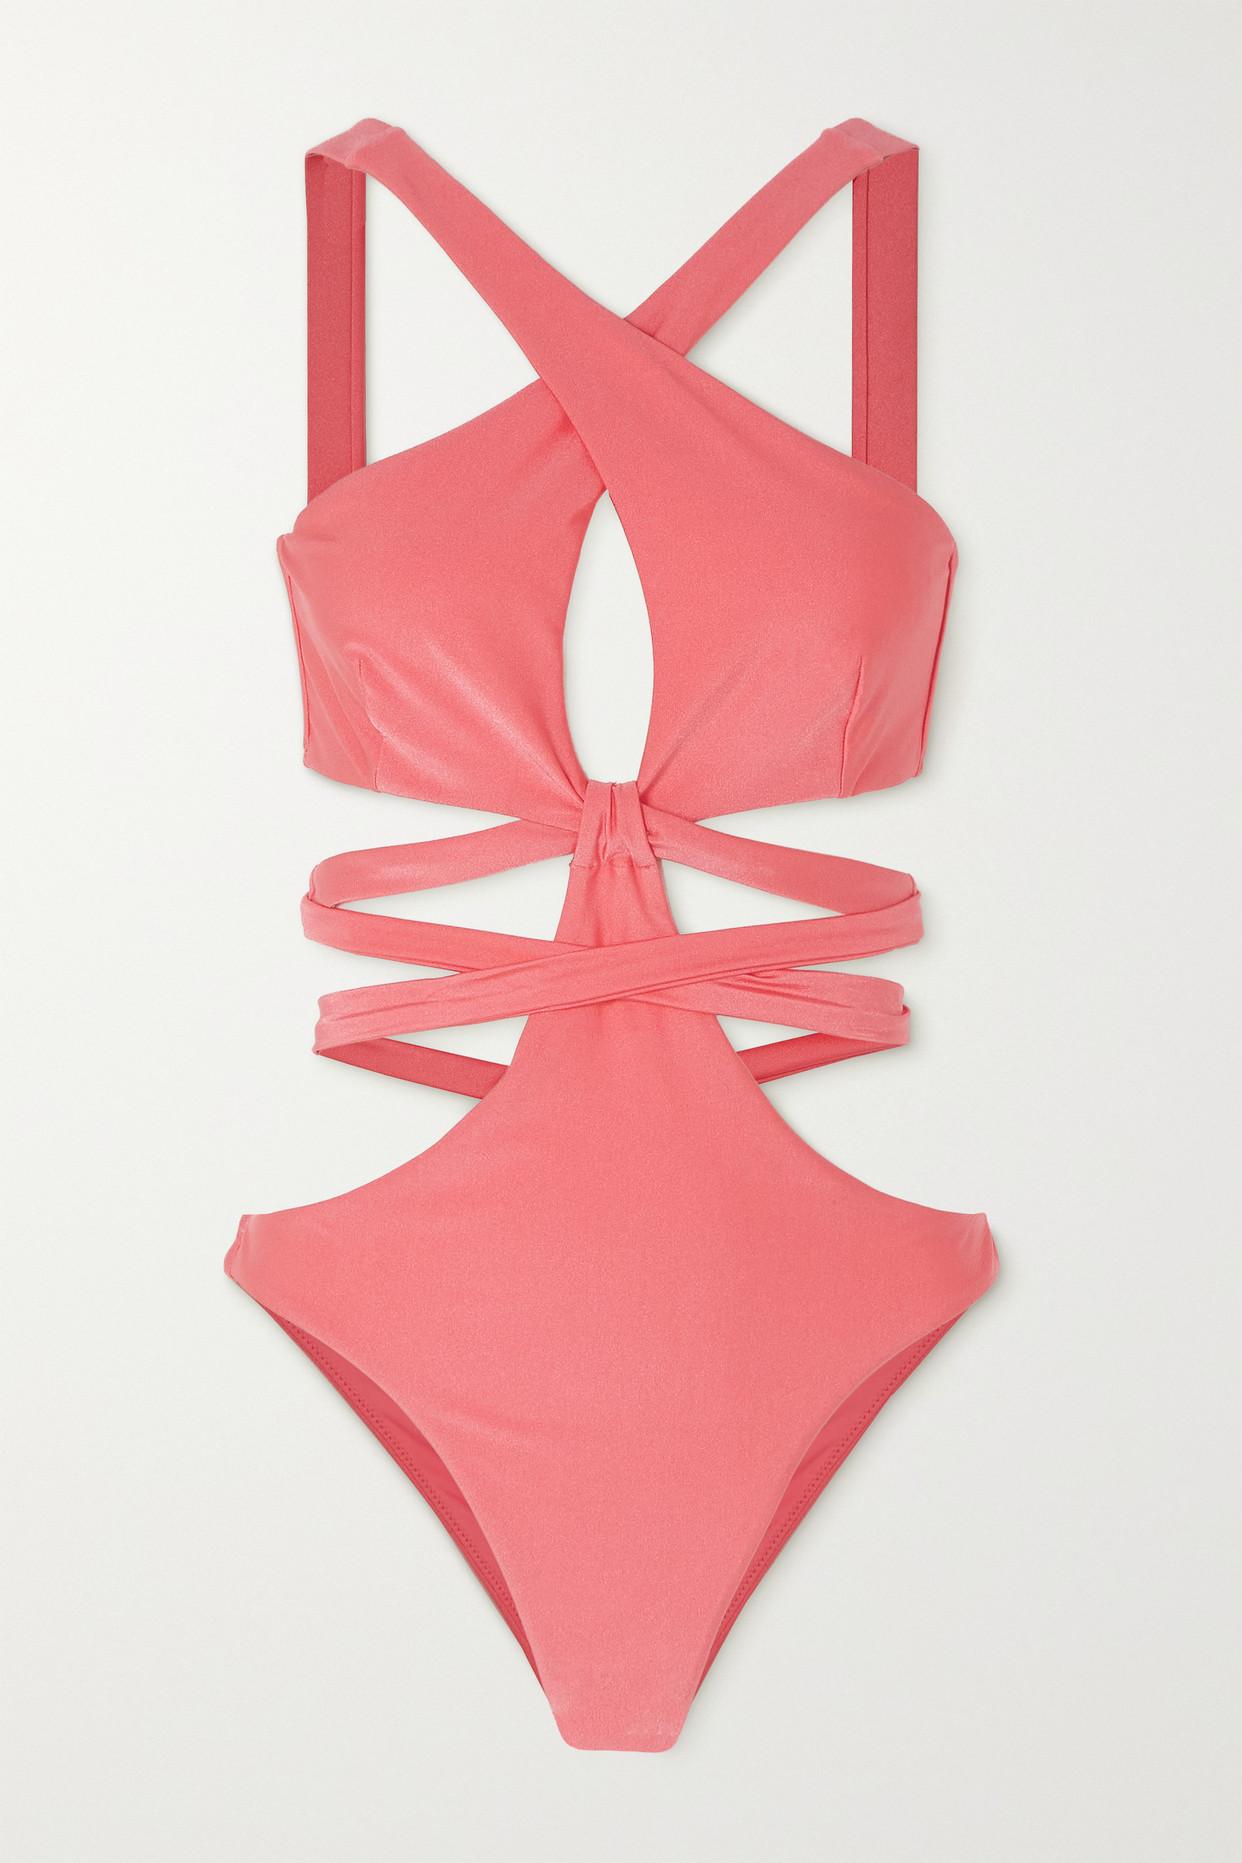 Cult Gaia Atiana Cutout Swimsuit in Pink | Lyst UK